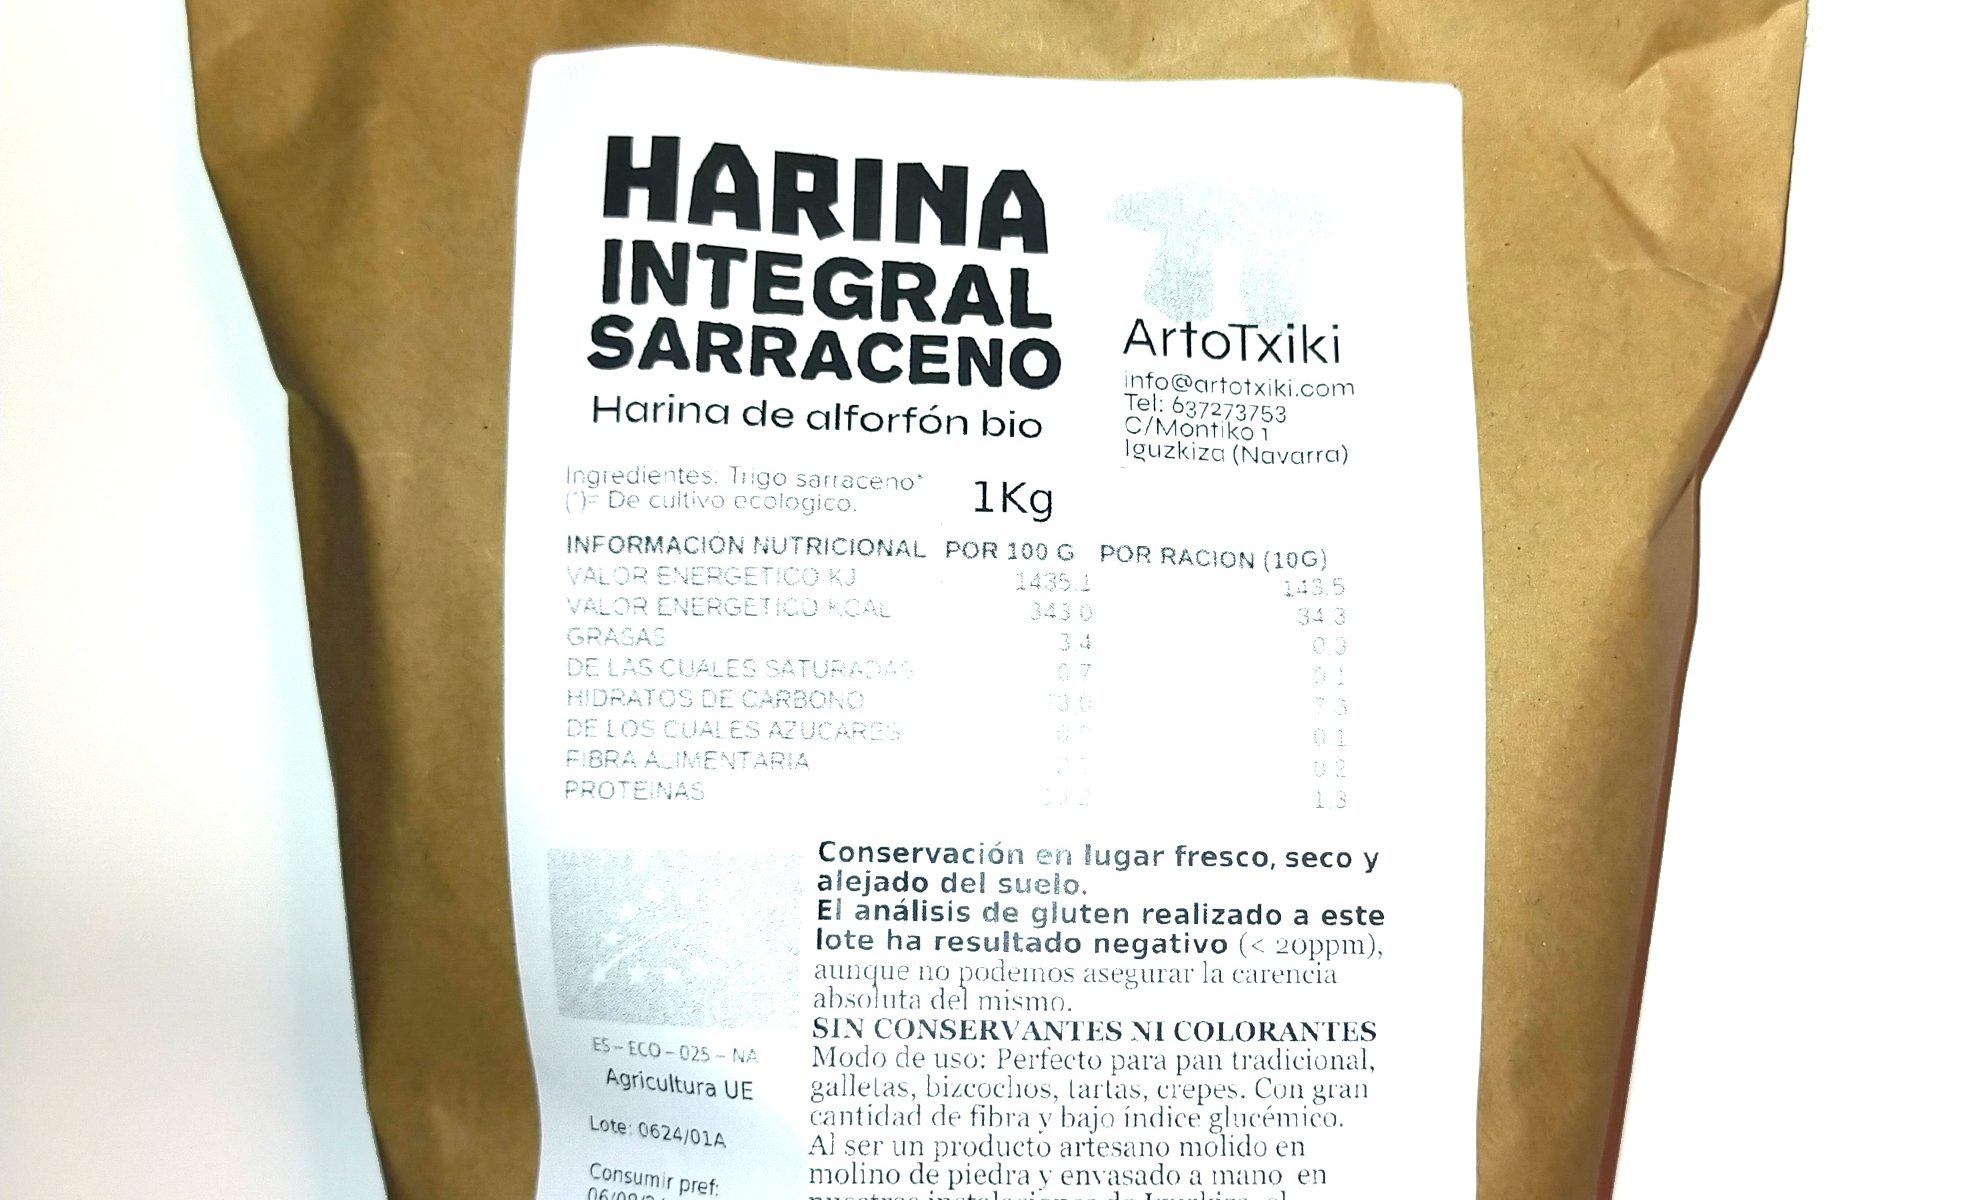 Harina integral de trigo sarraceno